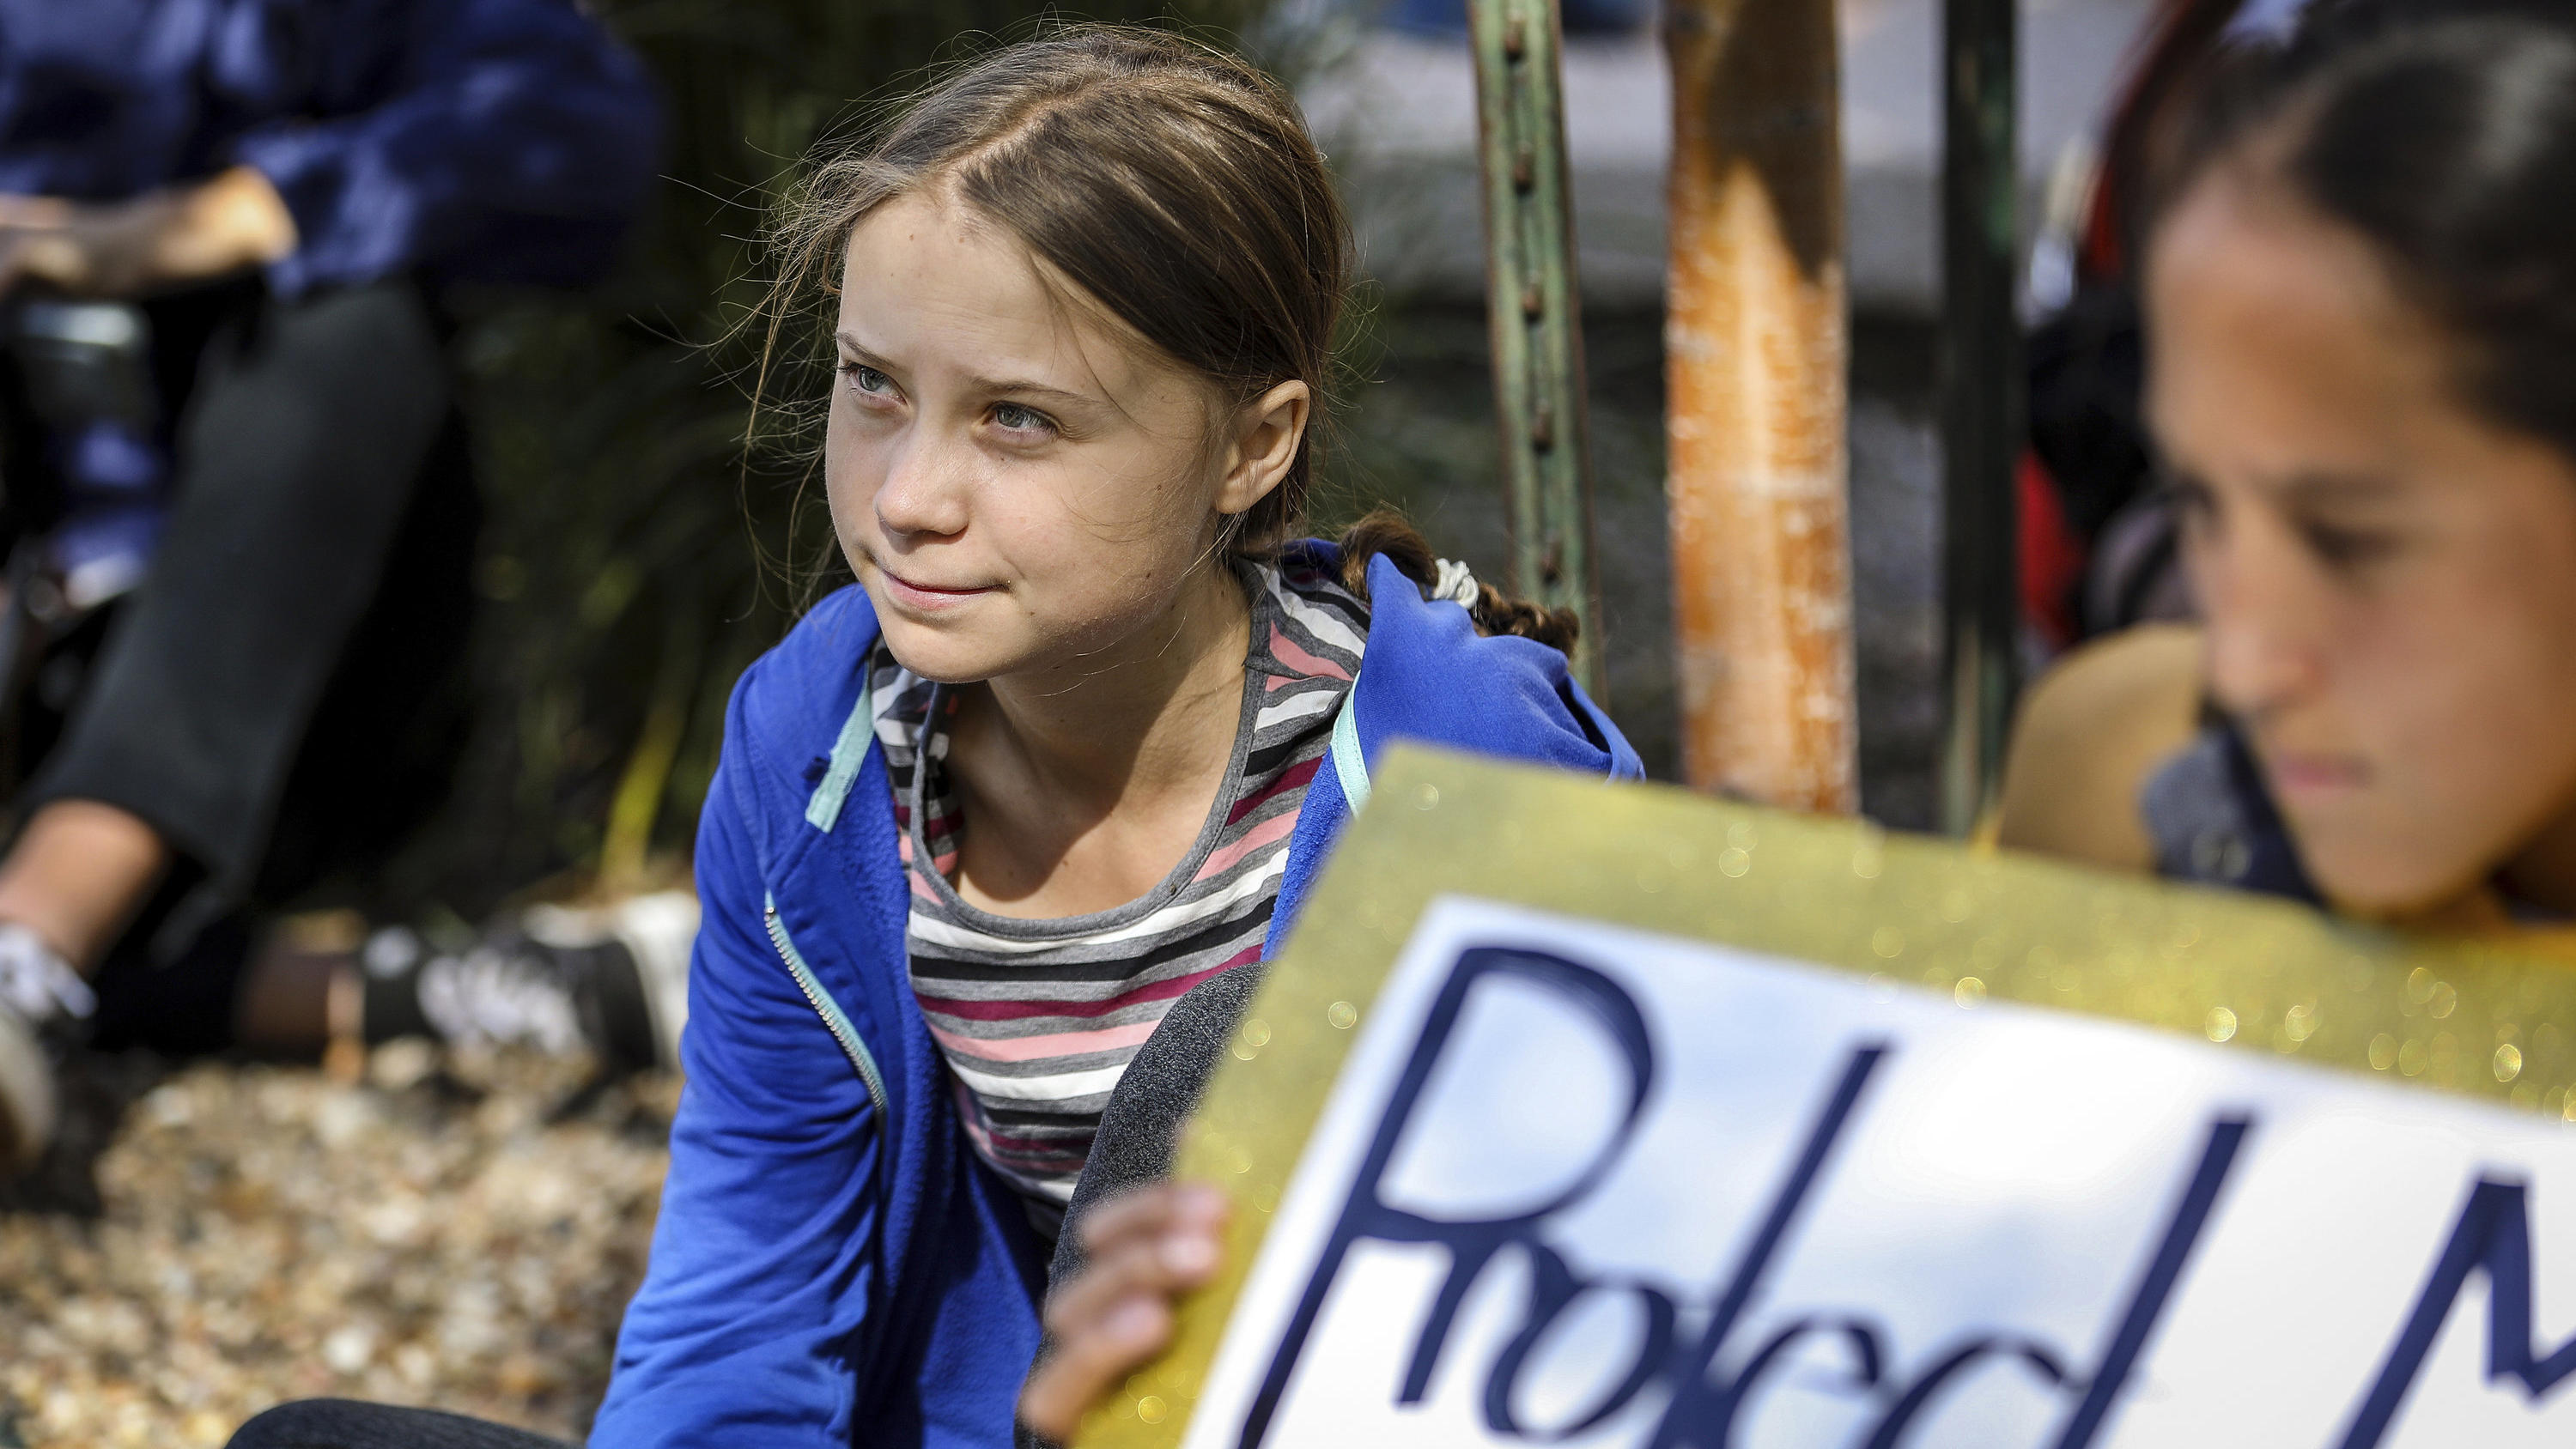 07.10.2019, USA, Rapid City: Greta Thunberg, Klimaaktivistin und Schülerin aus Schweden, sitzt mit Teilnehmern am Rande einer Demonstration. Foto: Adam Fondren/Rapid City Journal/AP/dpa +++ dpa-Bildfunk +++